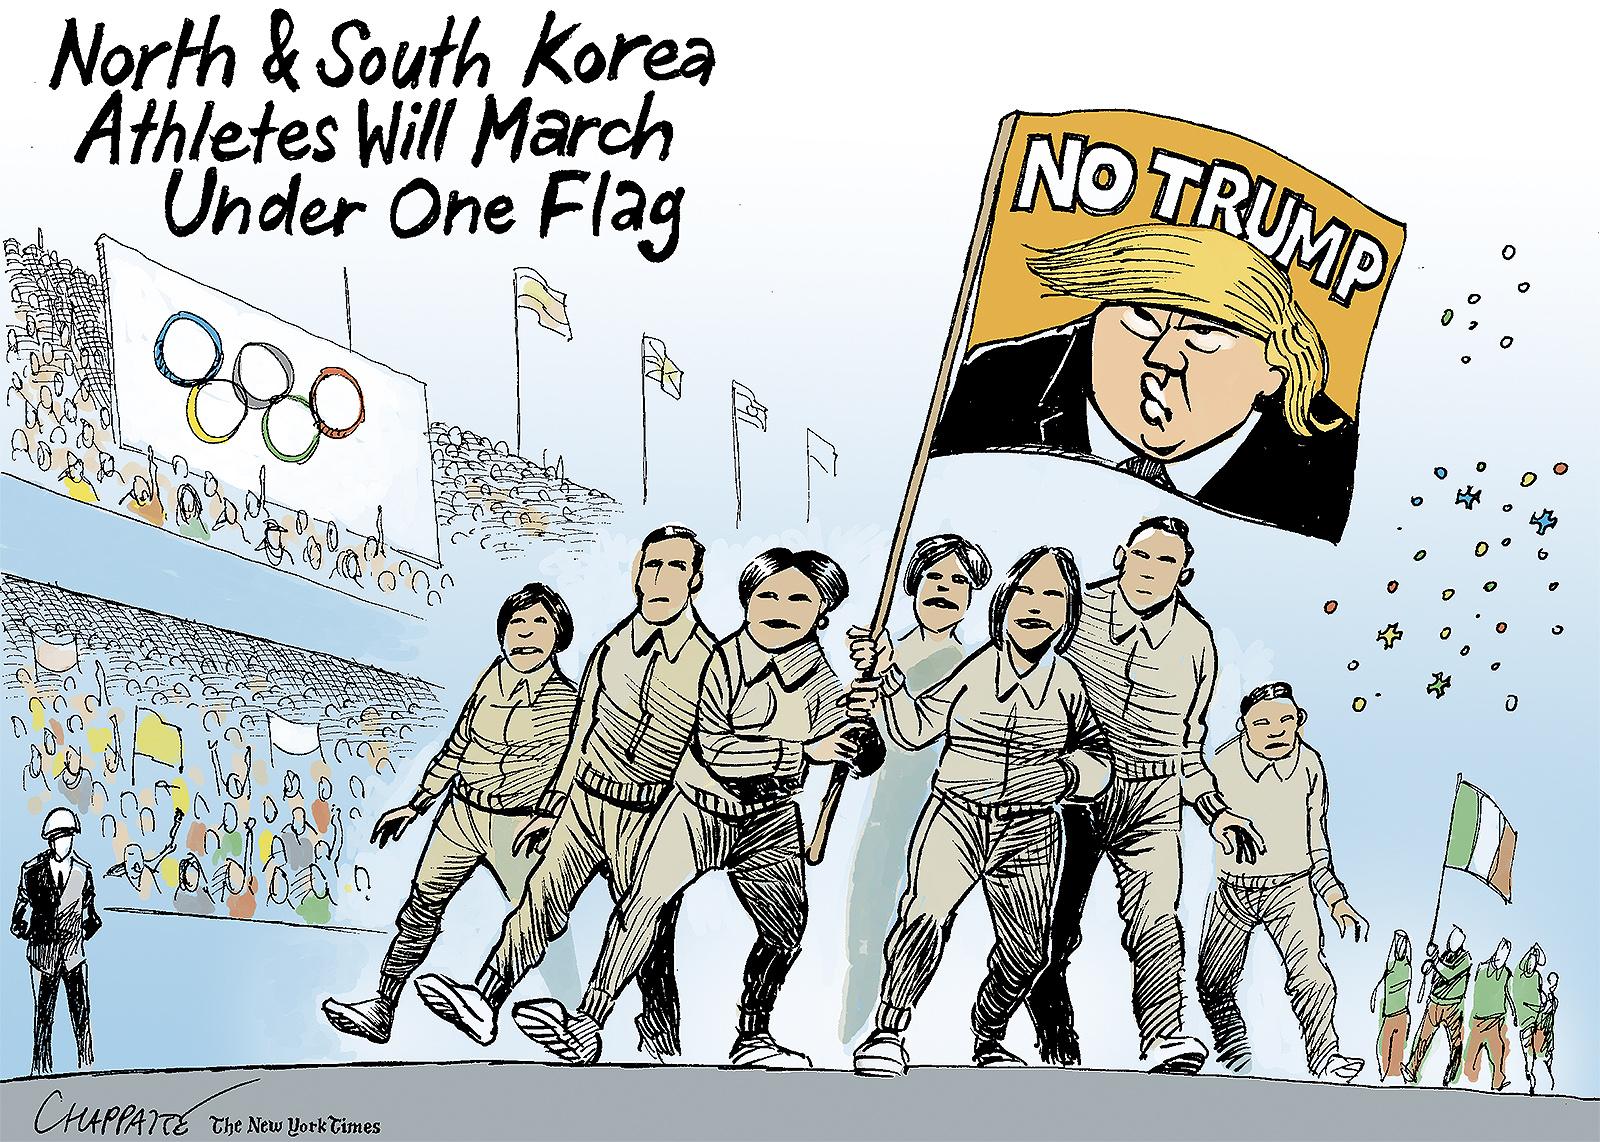 Trump unites the two Koreas